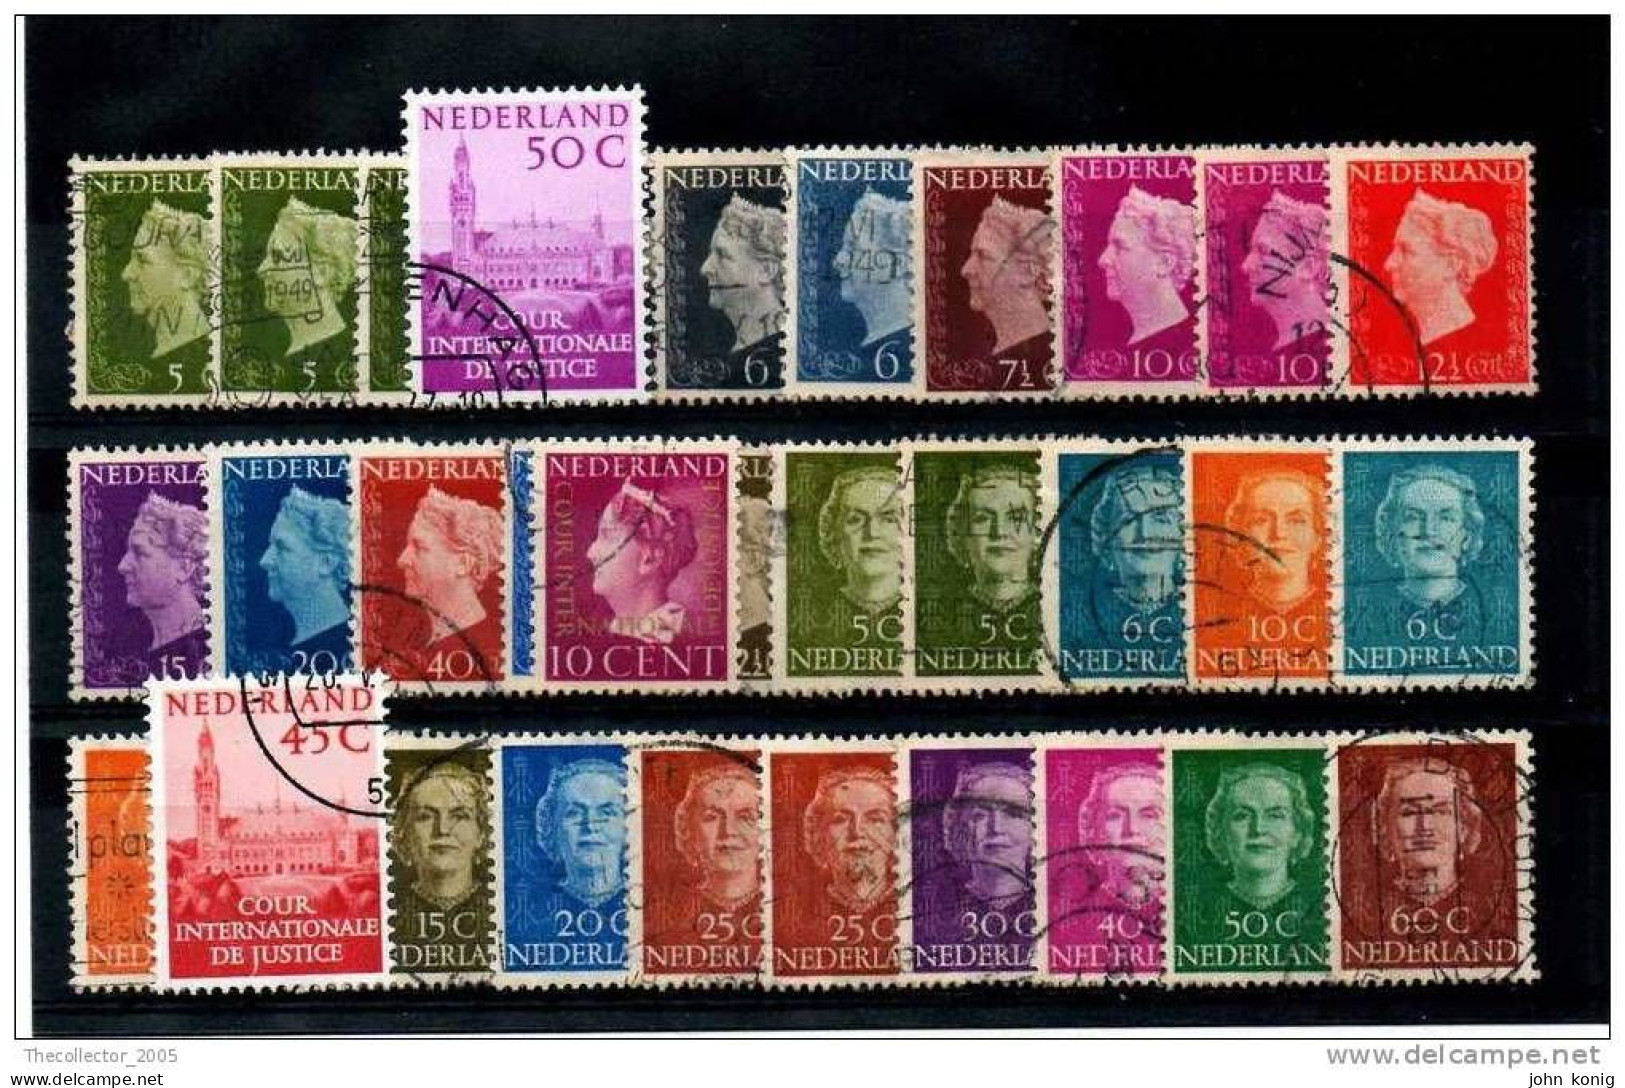 OLANDA - PAESI BASSI - HOLLAND - NEDERLAND - Lotto Francobolli - Stamps Lot - Verzamelingen